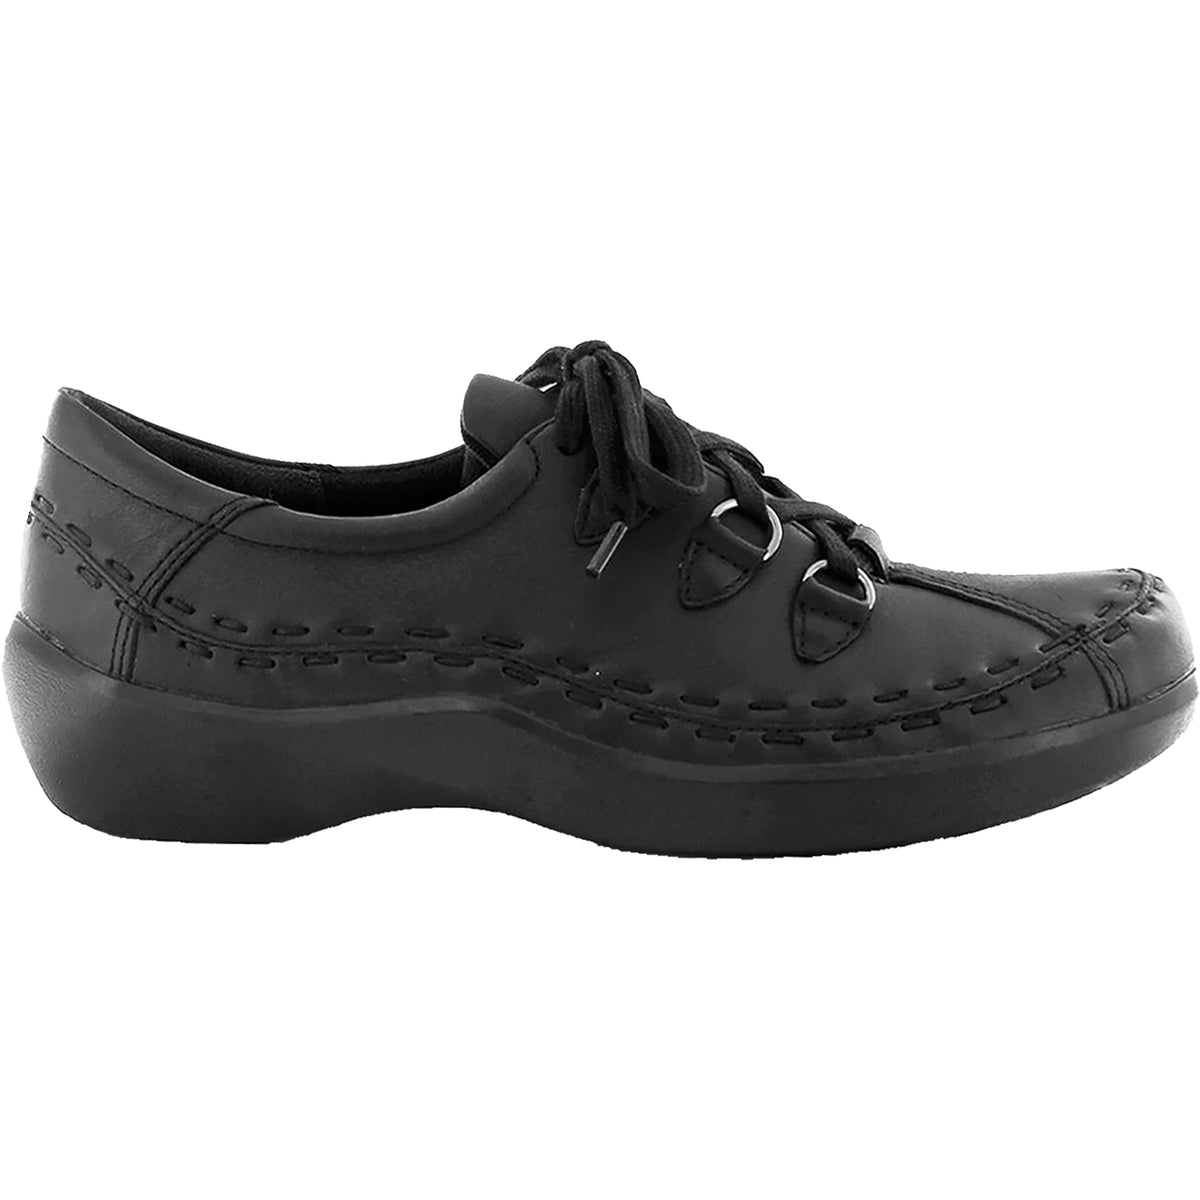 Ziera Allsorts | Ziera Women's Walking Shoes | Footwear etc.